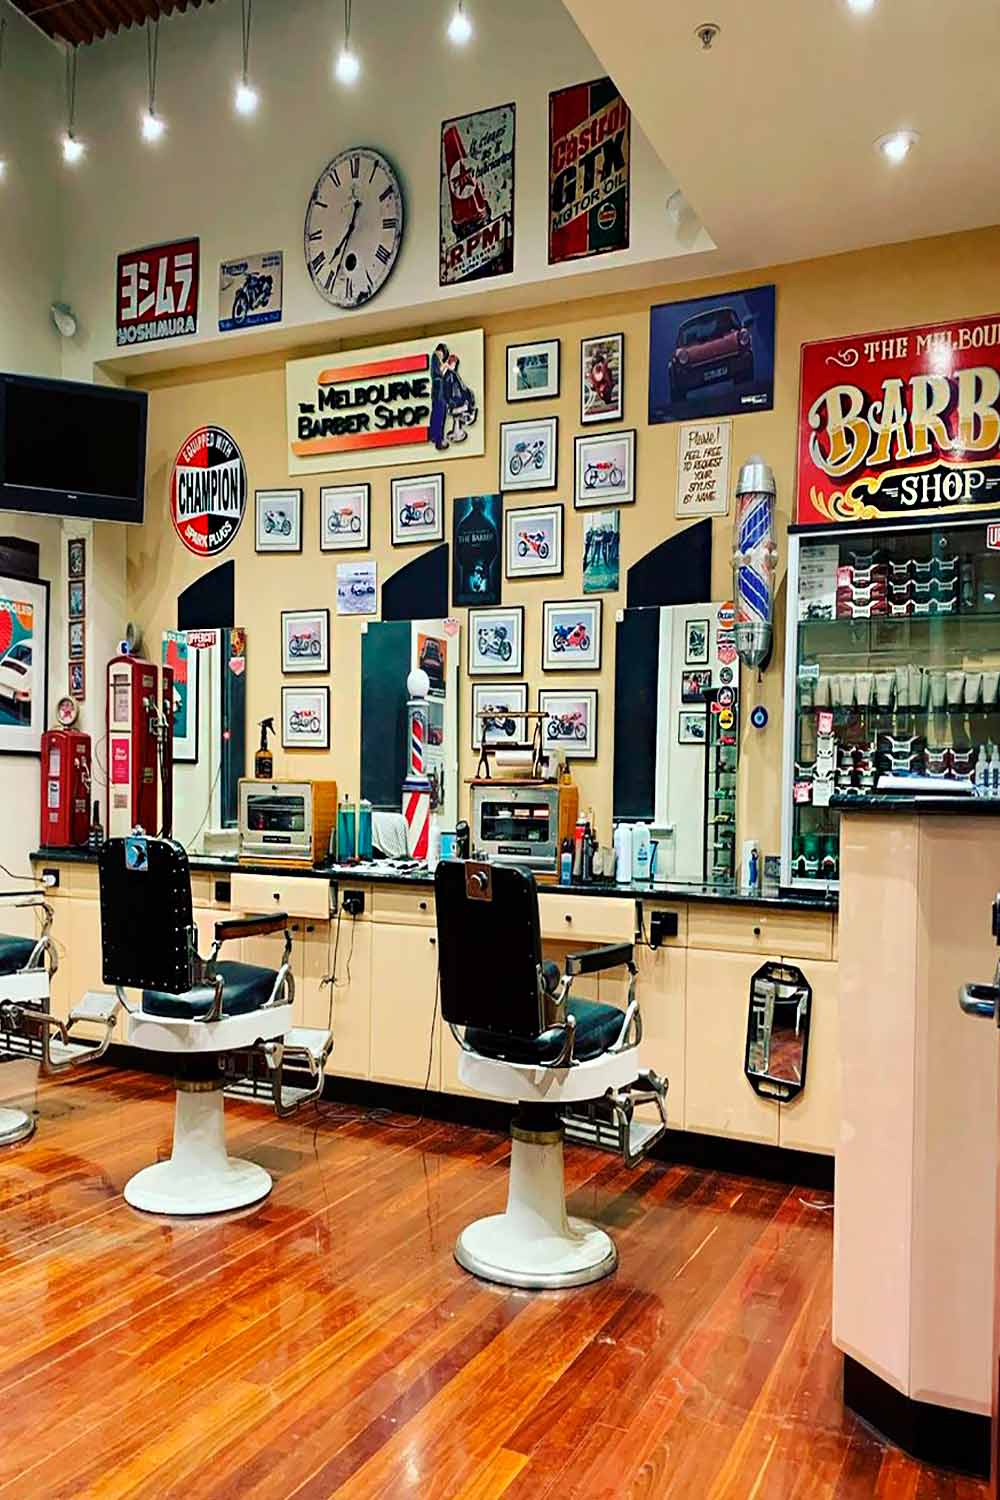 The Melbourne Barber Shop 2